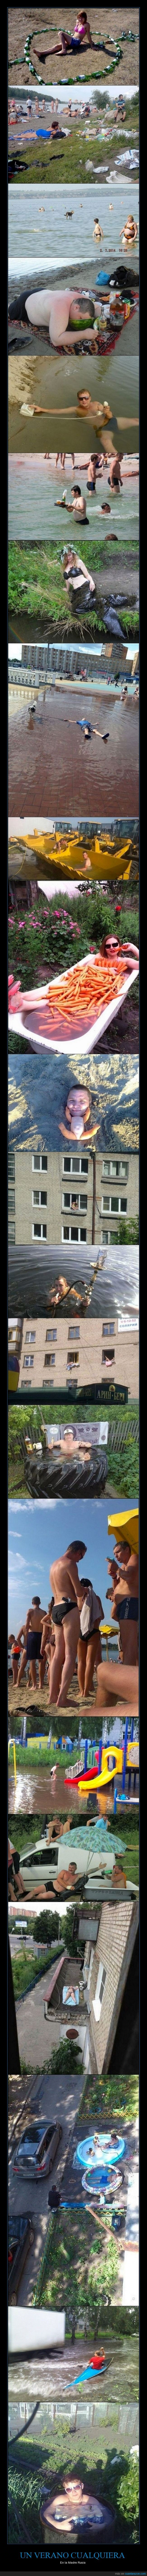 piscina,raro,extraño,Rusia,estan enfadados porqué el vodka se les calienta,Verano,típico